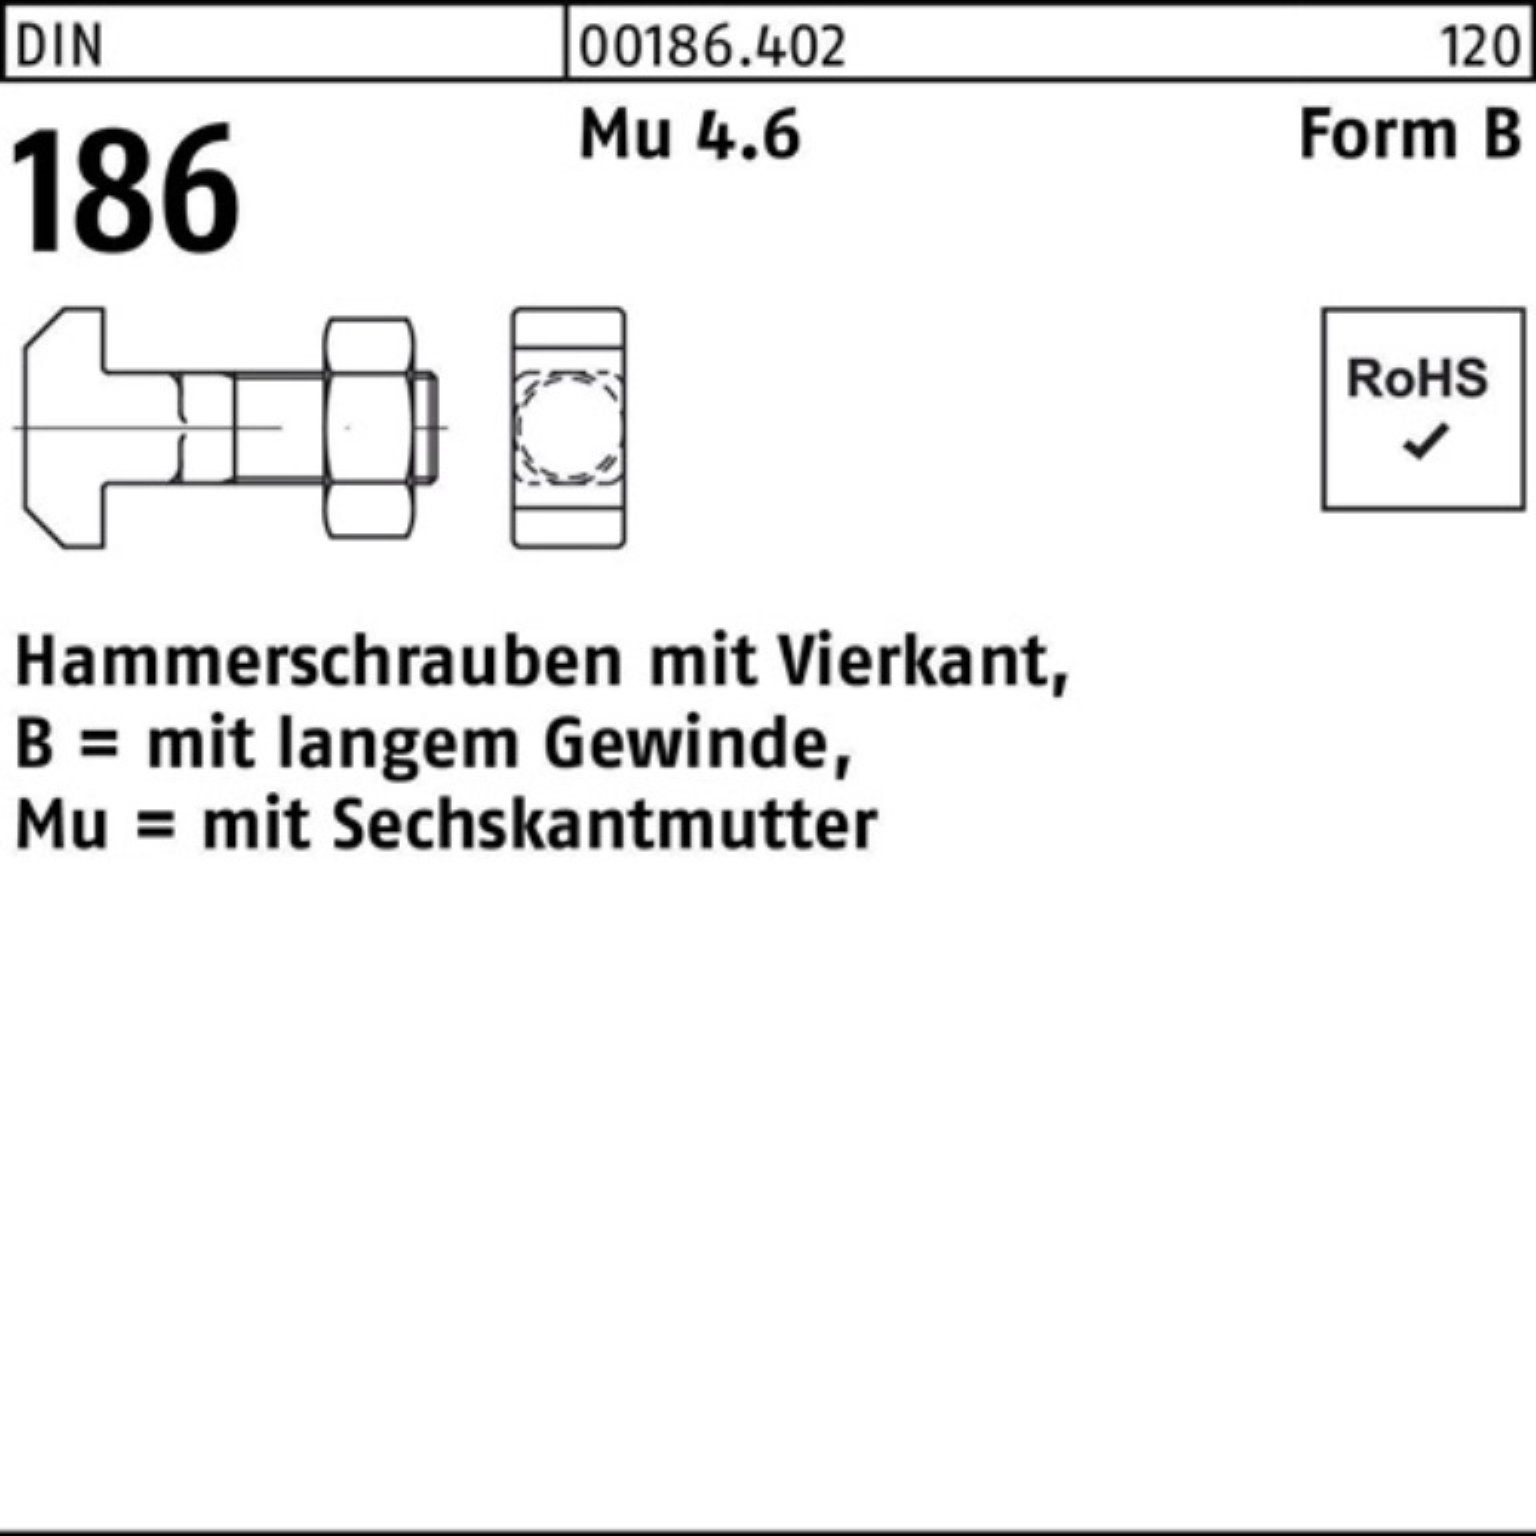 Reyher Schraube 100er Pack Hammerschraube DIN 186 FormB Vierkant 6-ktmutter BM 24x 160